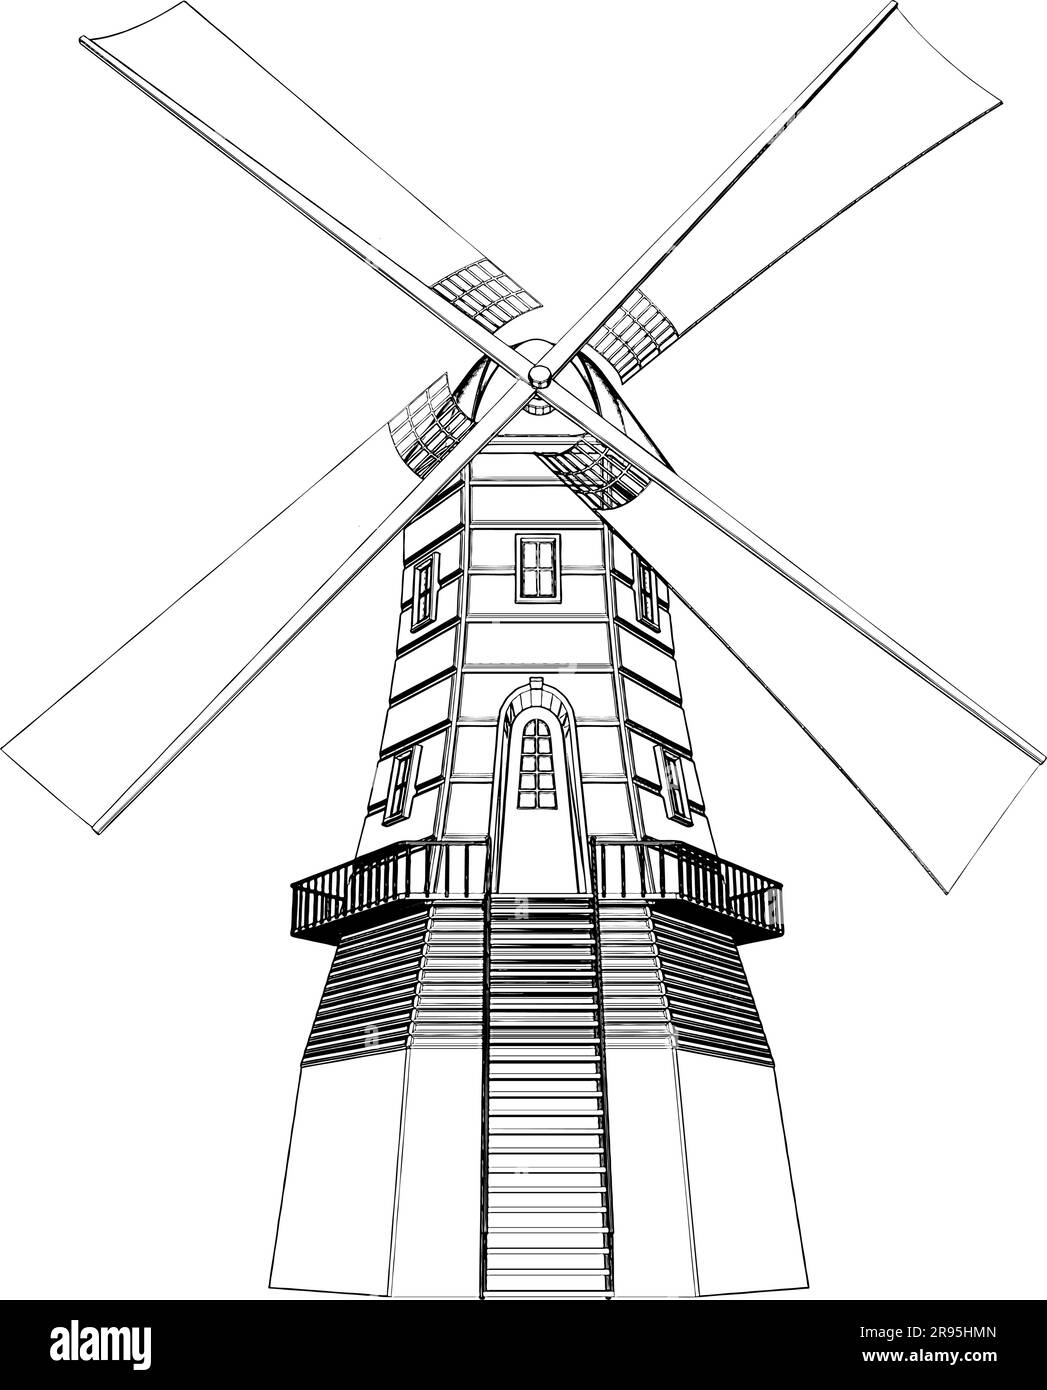 Vecteur antique de Moulin. Illustration isolée sur fond blanc. Une illustration vectorielle du moulin à vent d'époque. Illustration de Vecteur